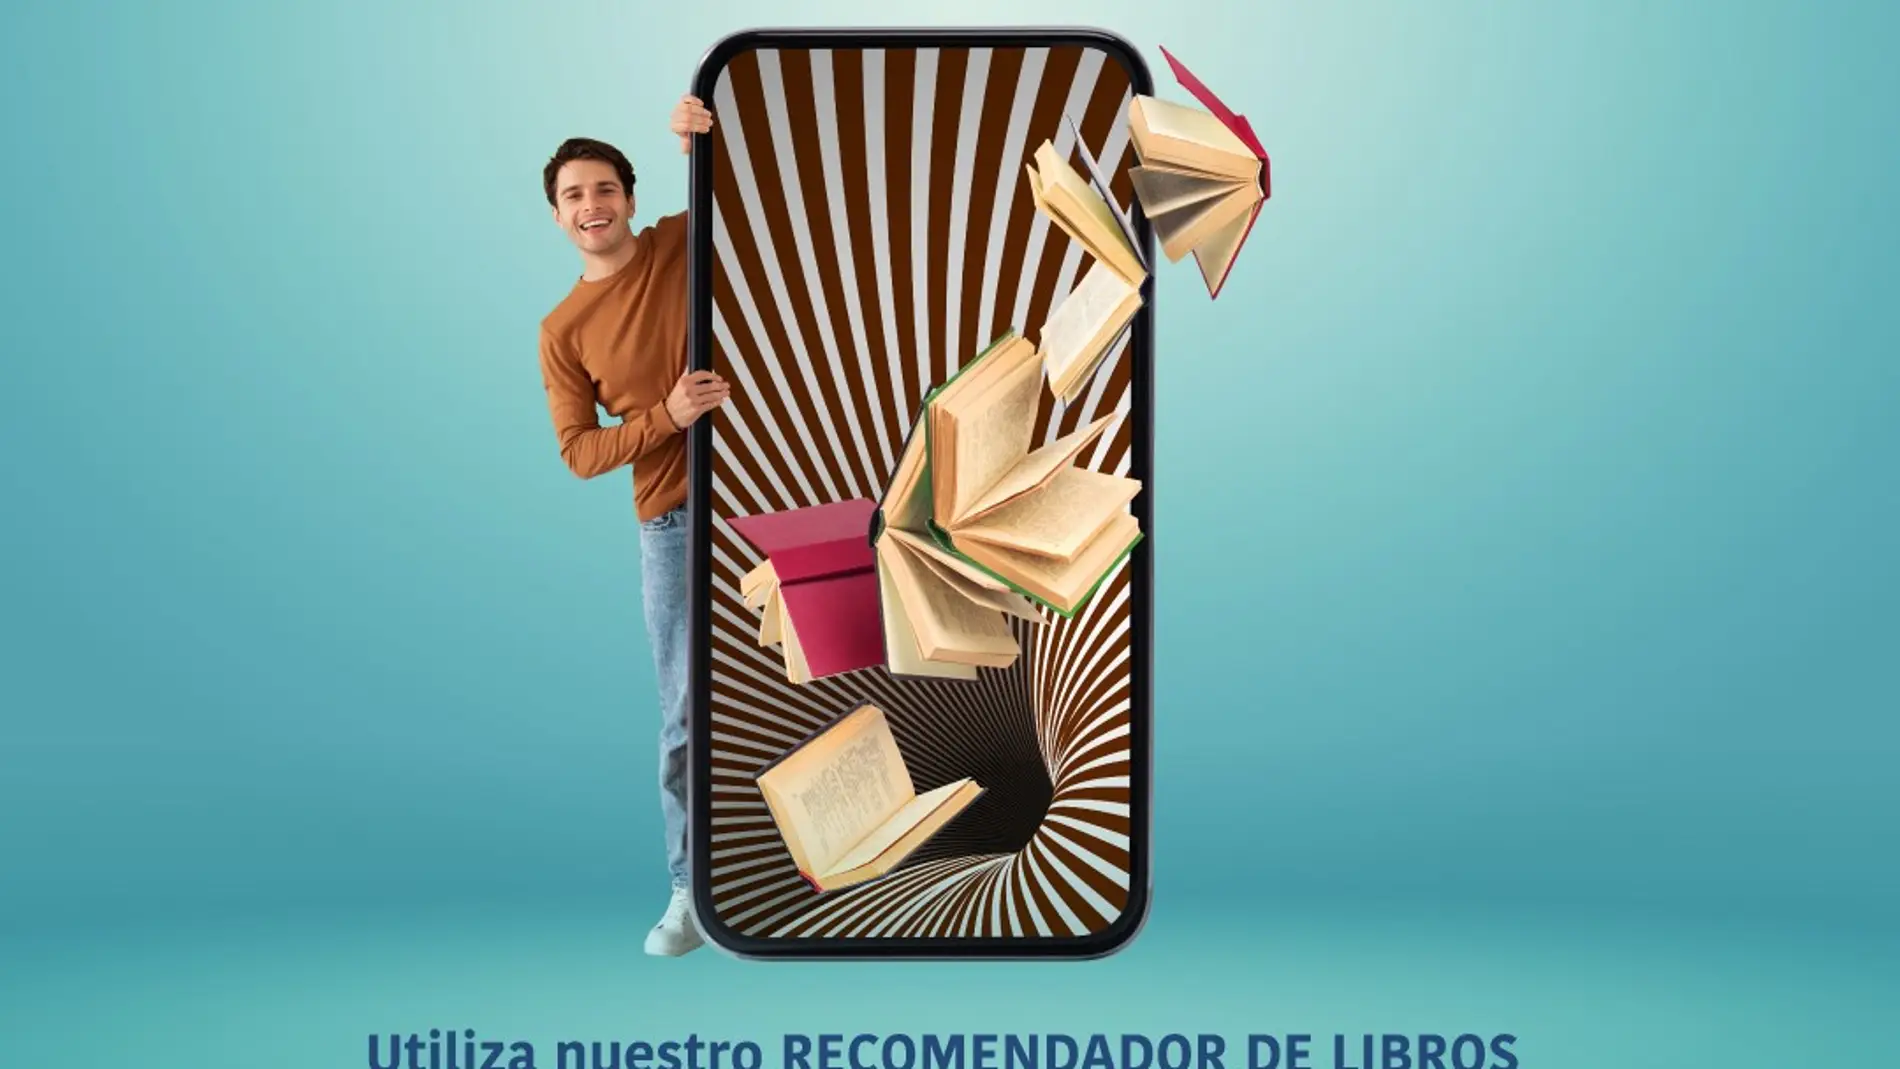 El centro comercial Rosaleda activa una campaña para fomentar la lectura